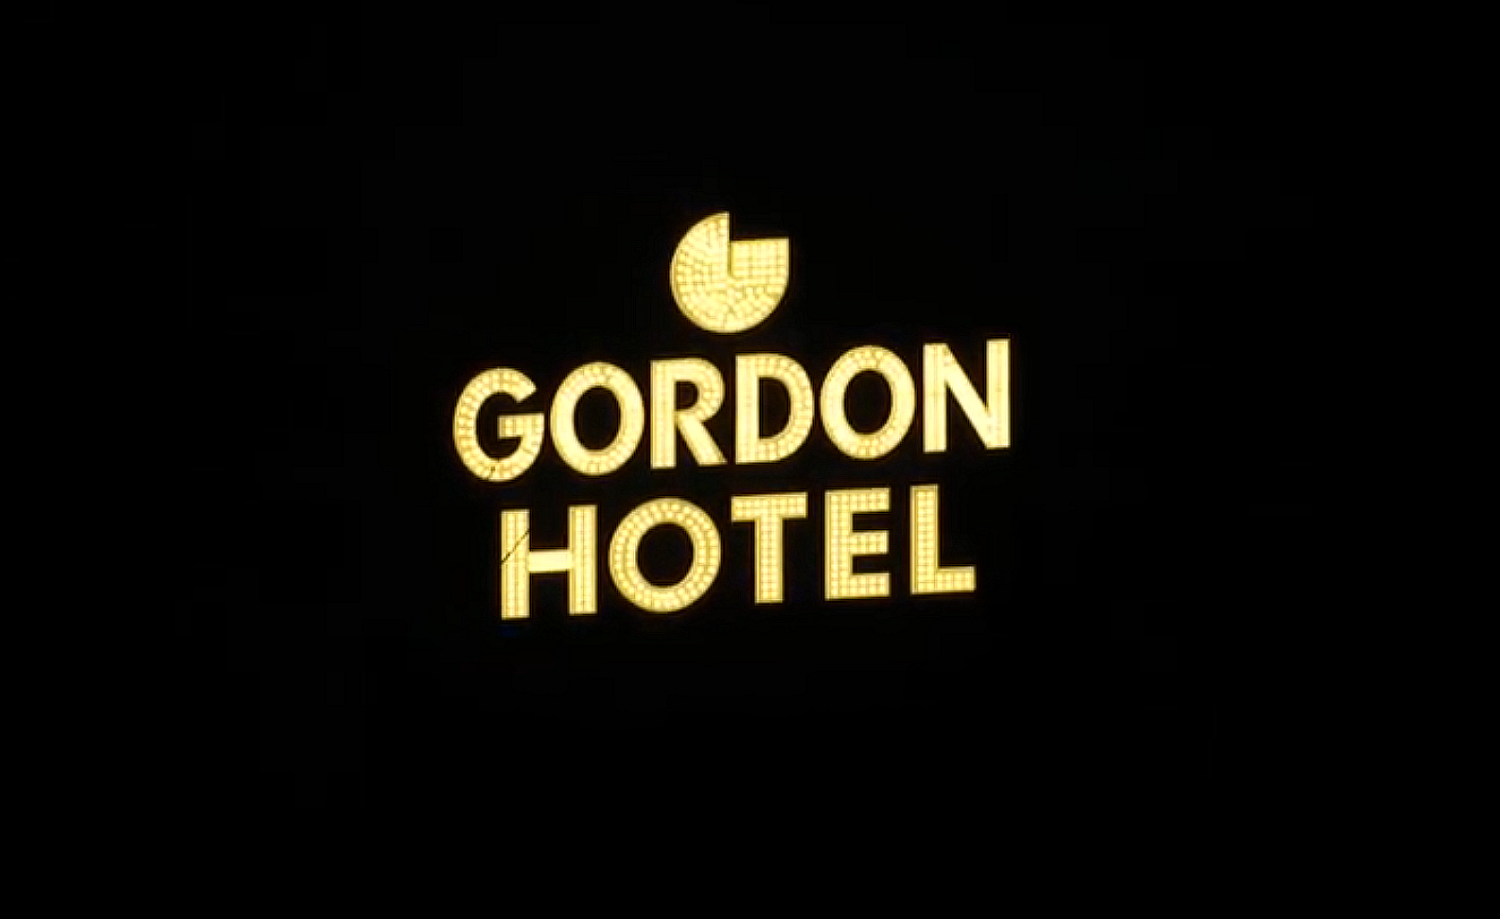 GordonHotelLitSign01_0.png